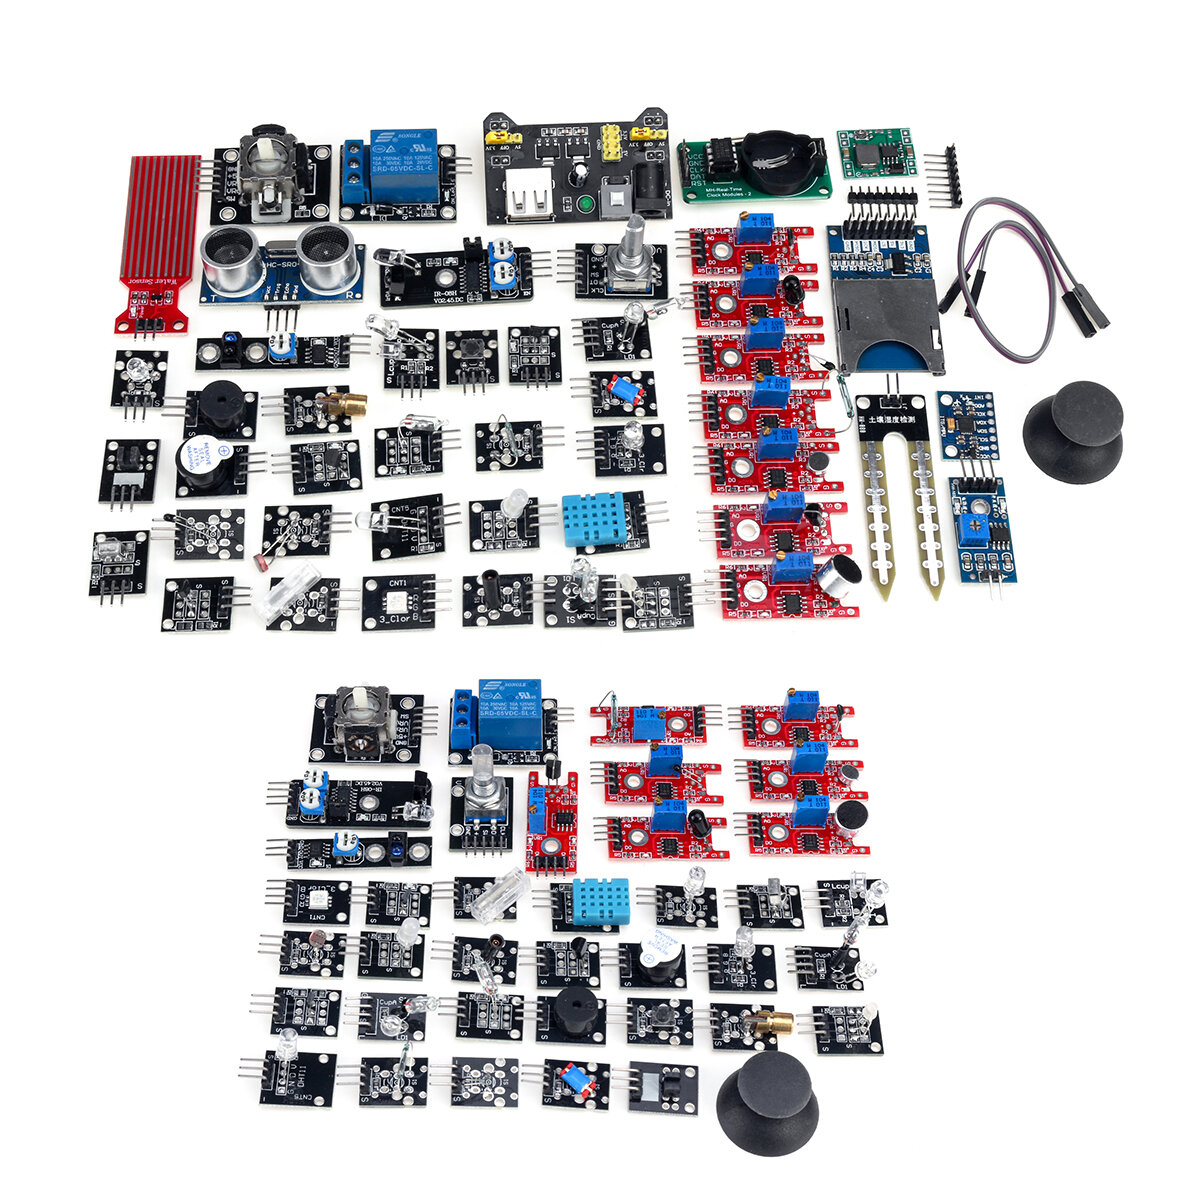 45 In 1 Sensor Module Starter Kit Updated Set For Arduino Raspberry Pi Education